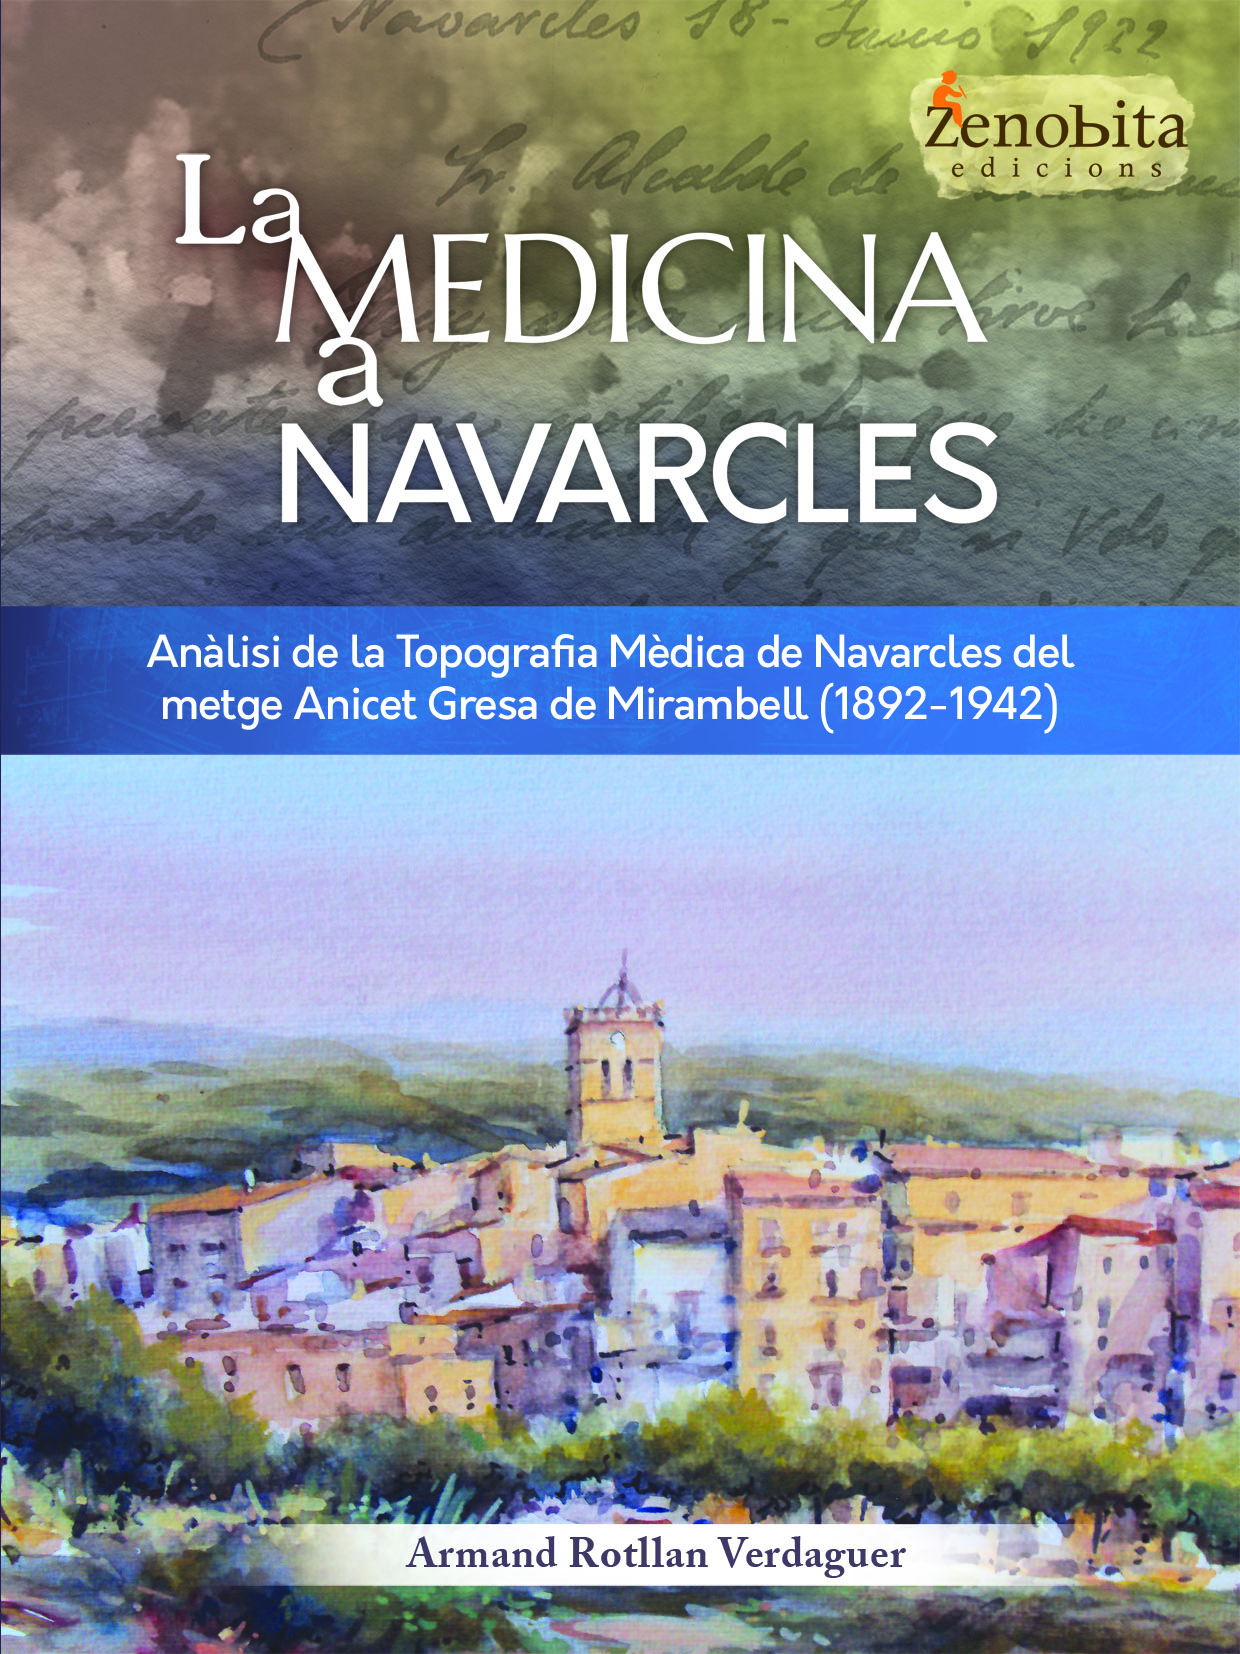 La història sanitària de Navarcles recollida en el nou llibre del doctor Armand Rotllan